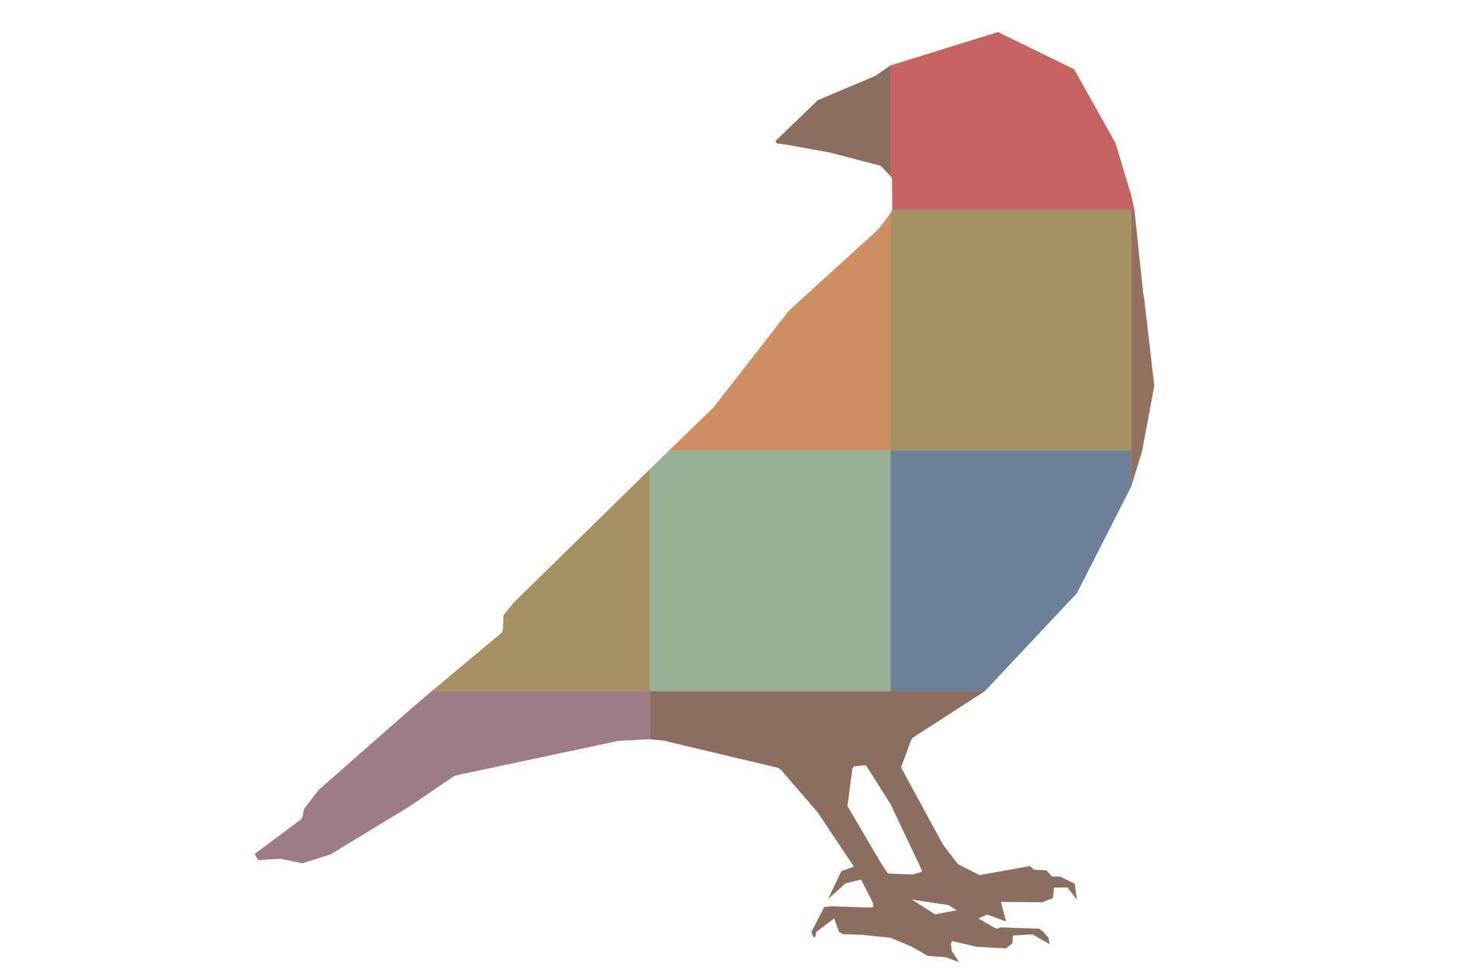 corvo vetorial, corvo, pé de corvus, silhueta colorida de um pássaro selvagem, abstração poligonal vetor